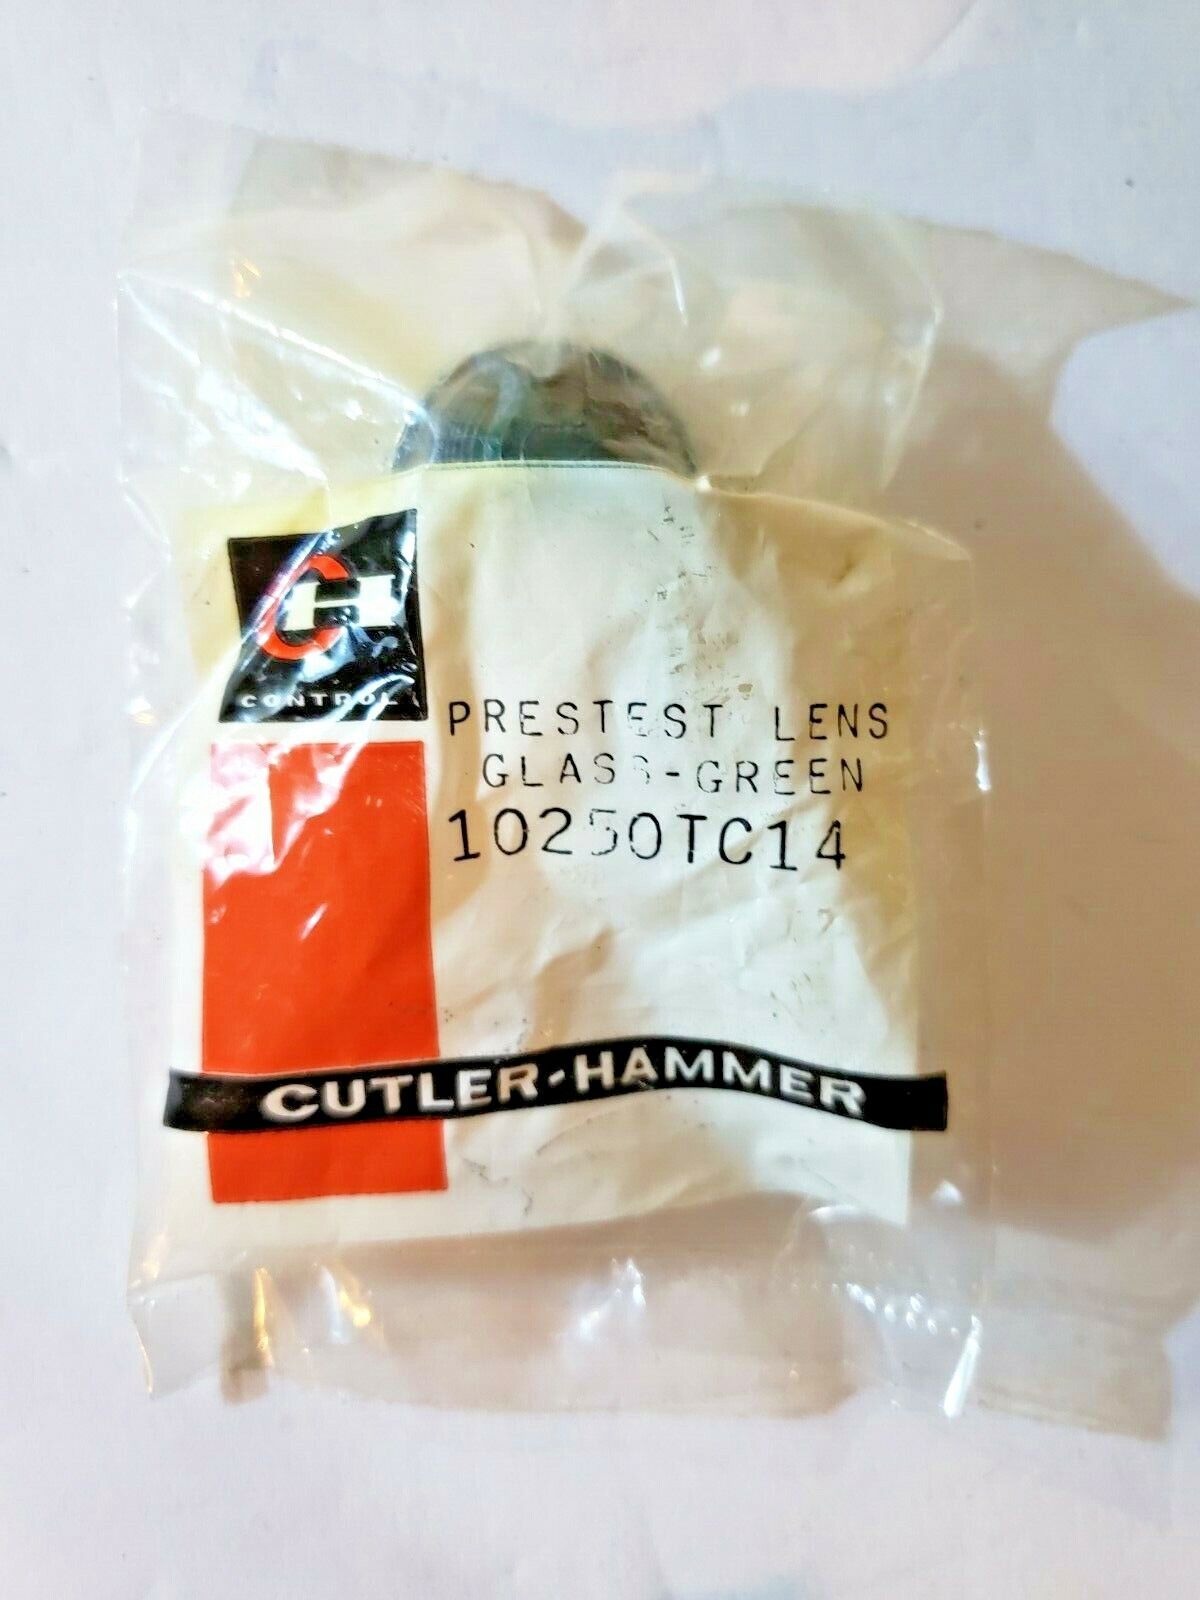 5 QTY Cutler Hammer 10250TC14 Prestest Lens, Glass, Green